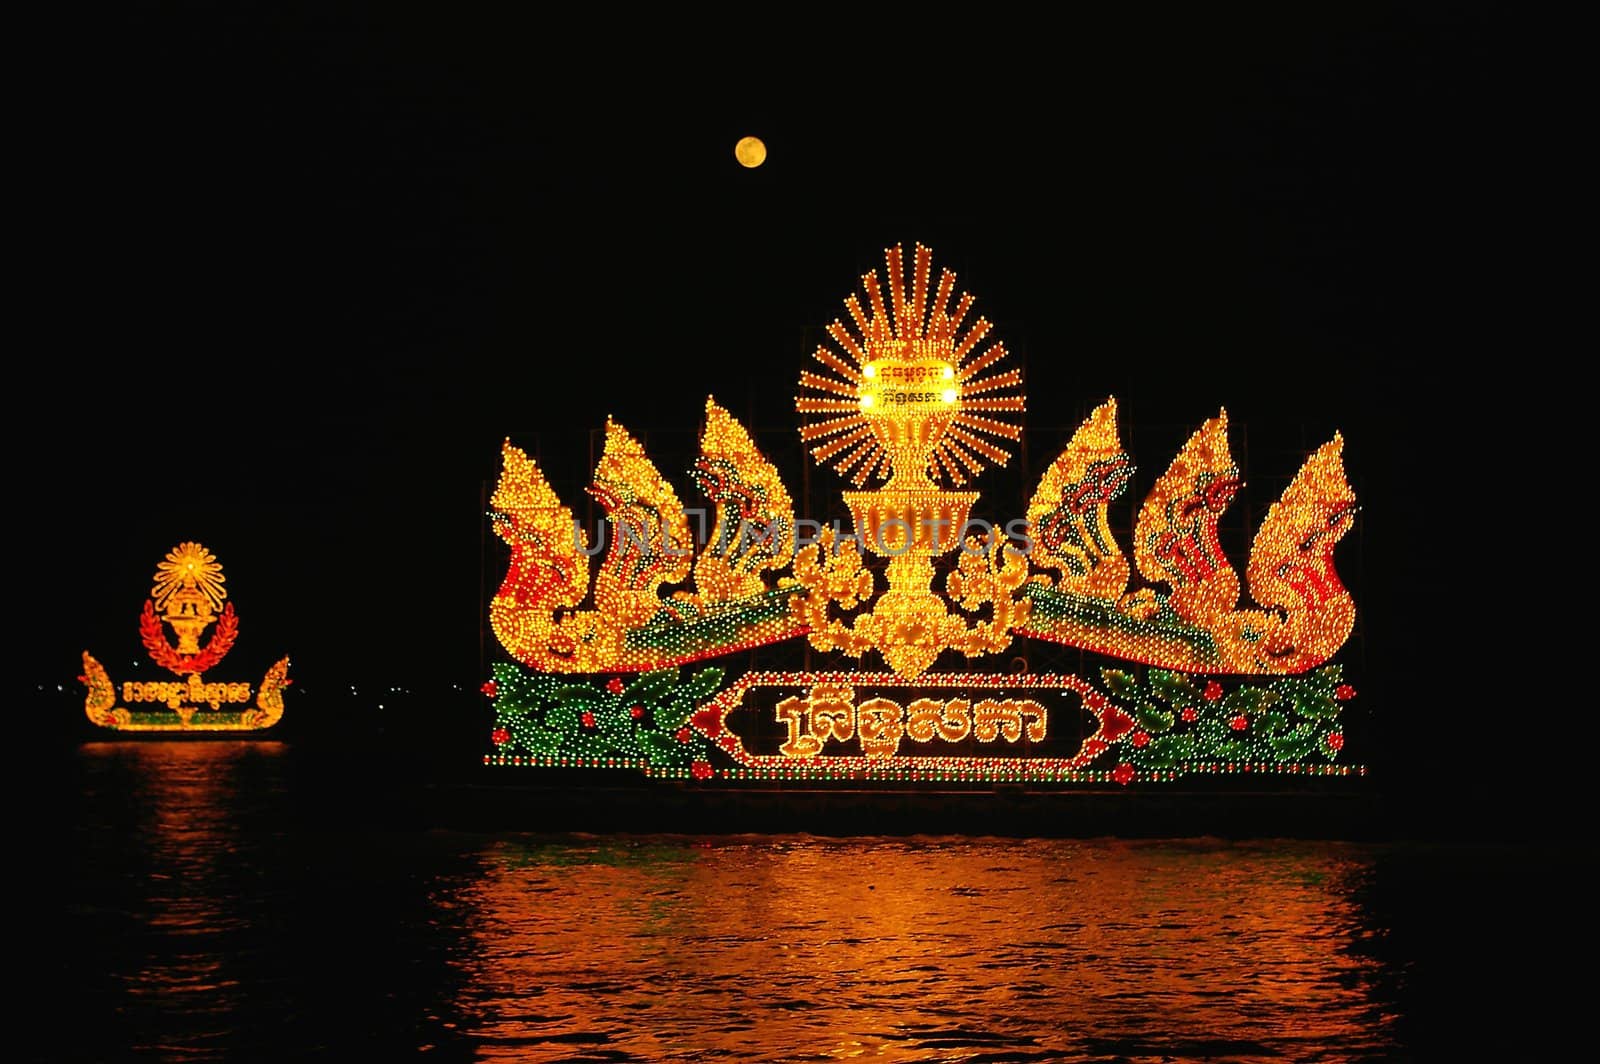 River show in Phnom Penh, Cambodia. Held annually in November.